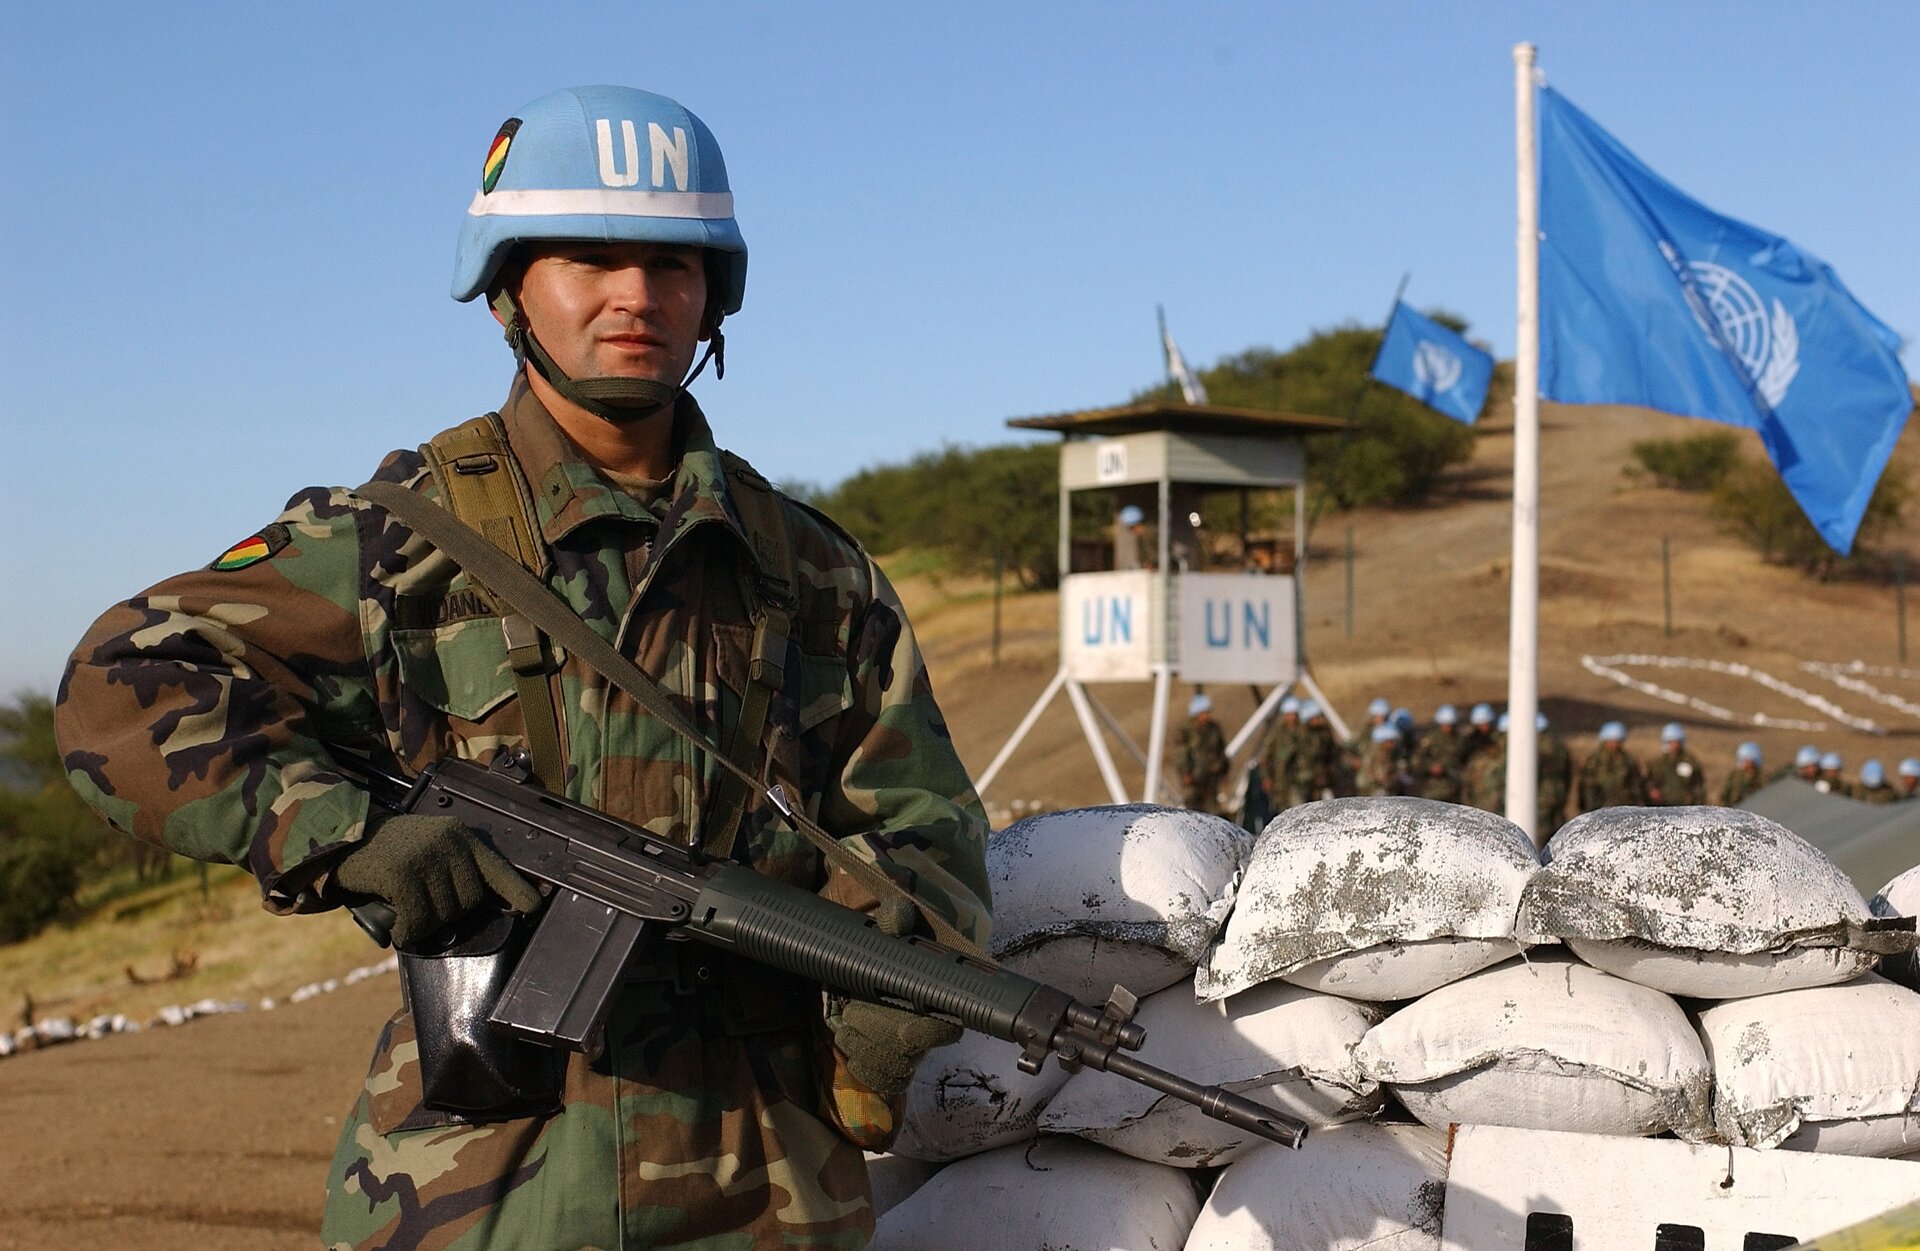 Na zdjęciu żołnierz sił pokojowych ONZ. W ręku trzyma karabin, a na głowie ma niebieski hełm z napisem UN. Stoi obok worków z piasem. W tle flaga ONZ oraz wieżyczka z żołnierzami. W oddali widać wzgórze.